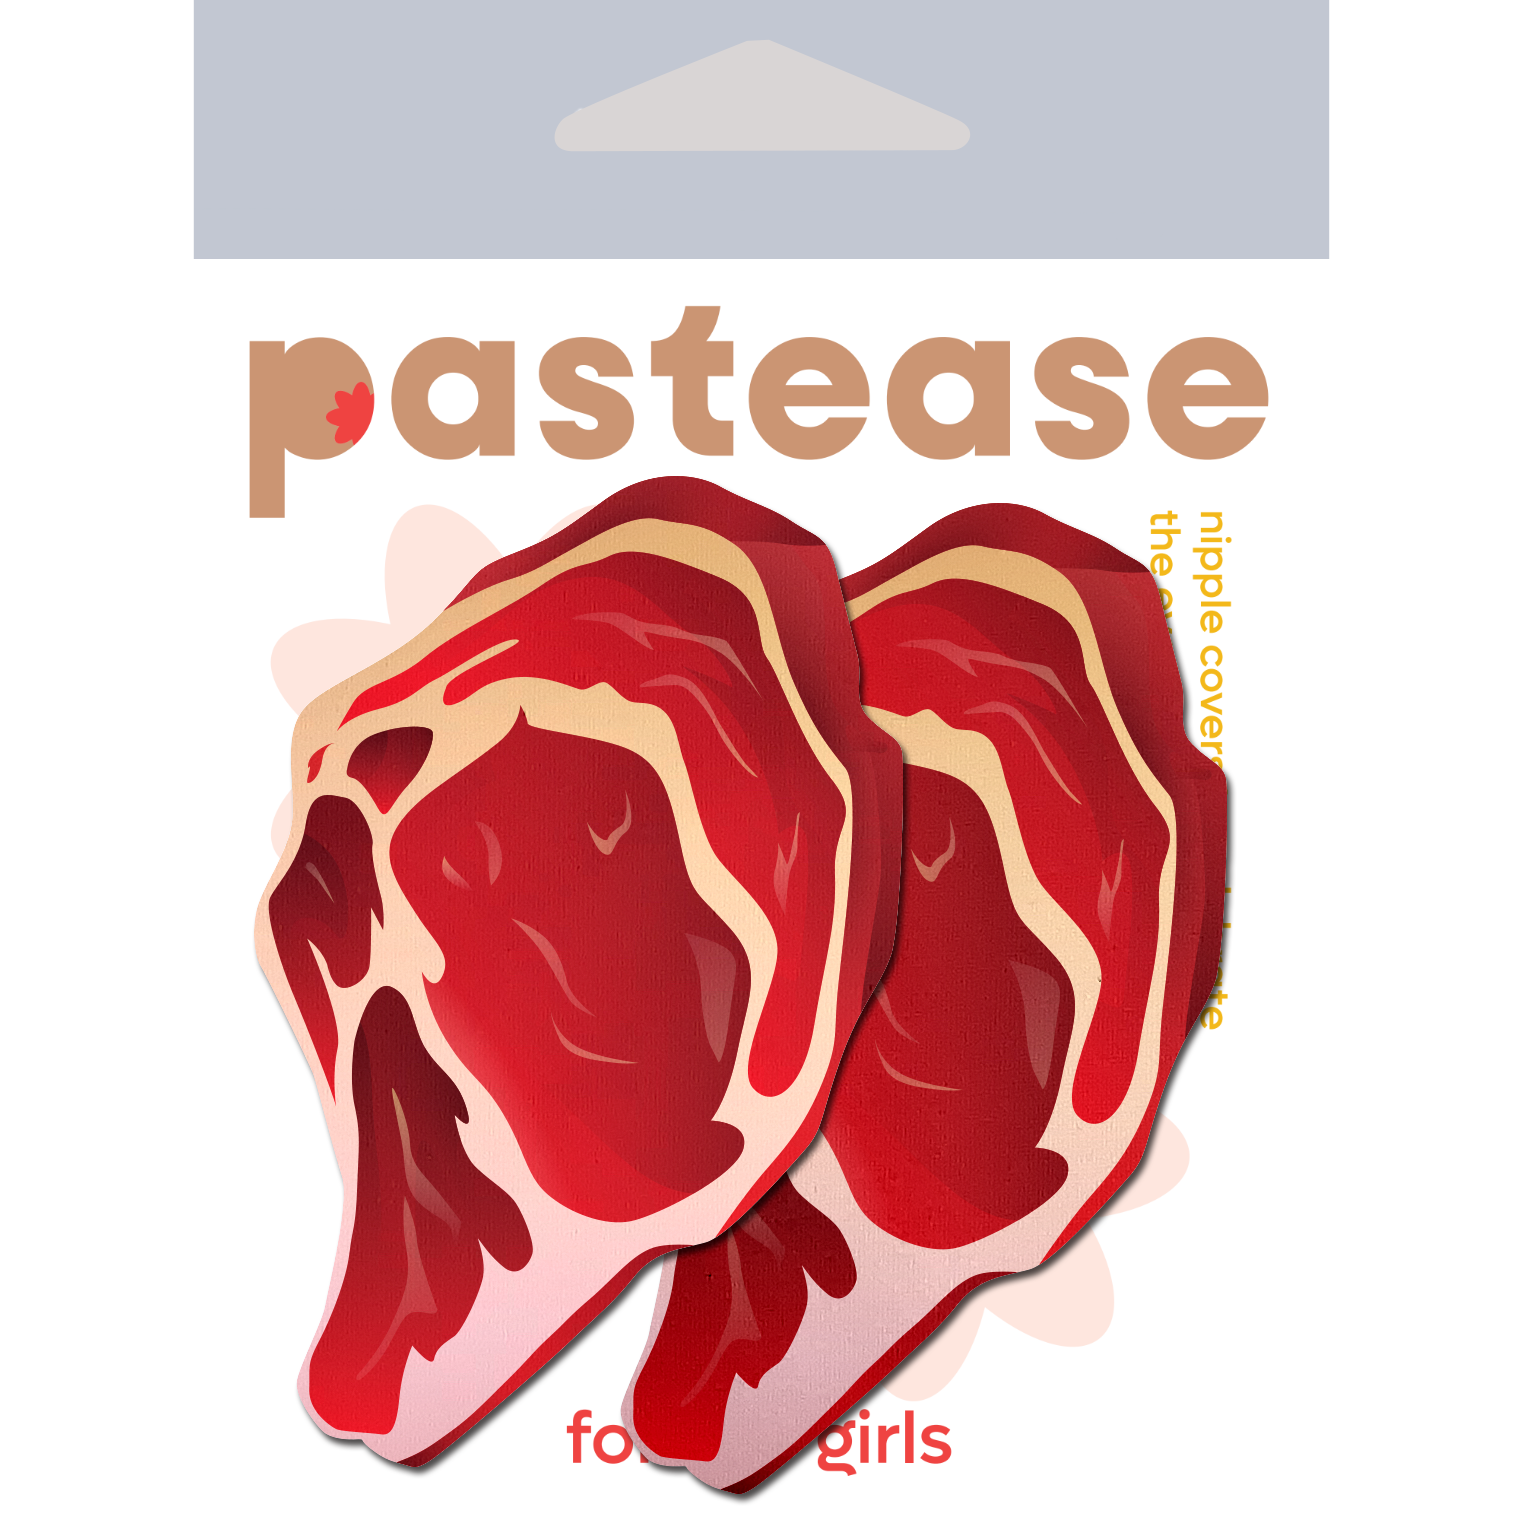 5-Pack: Steak Nipple Pasties by Pastease